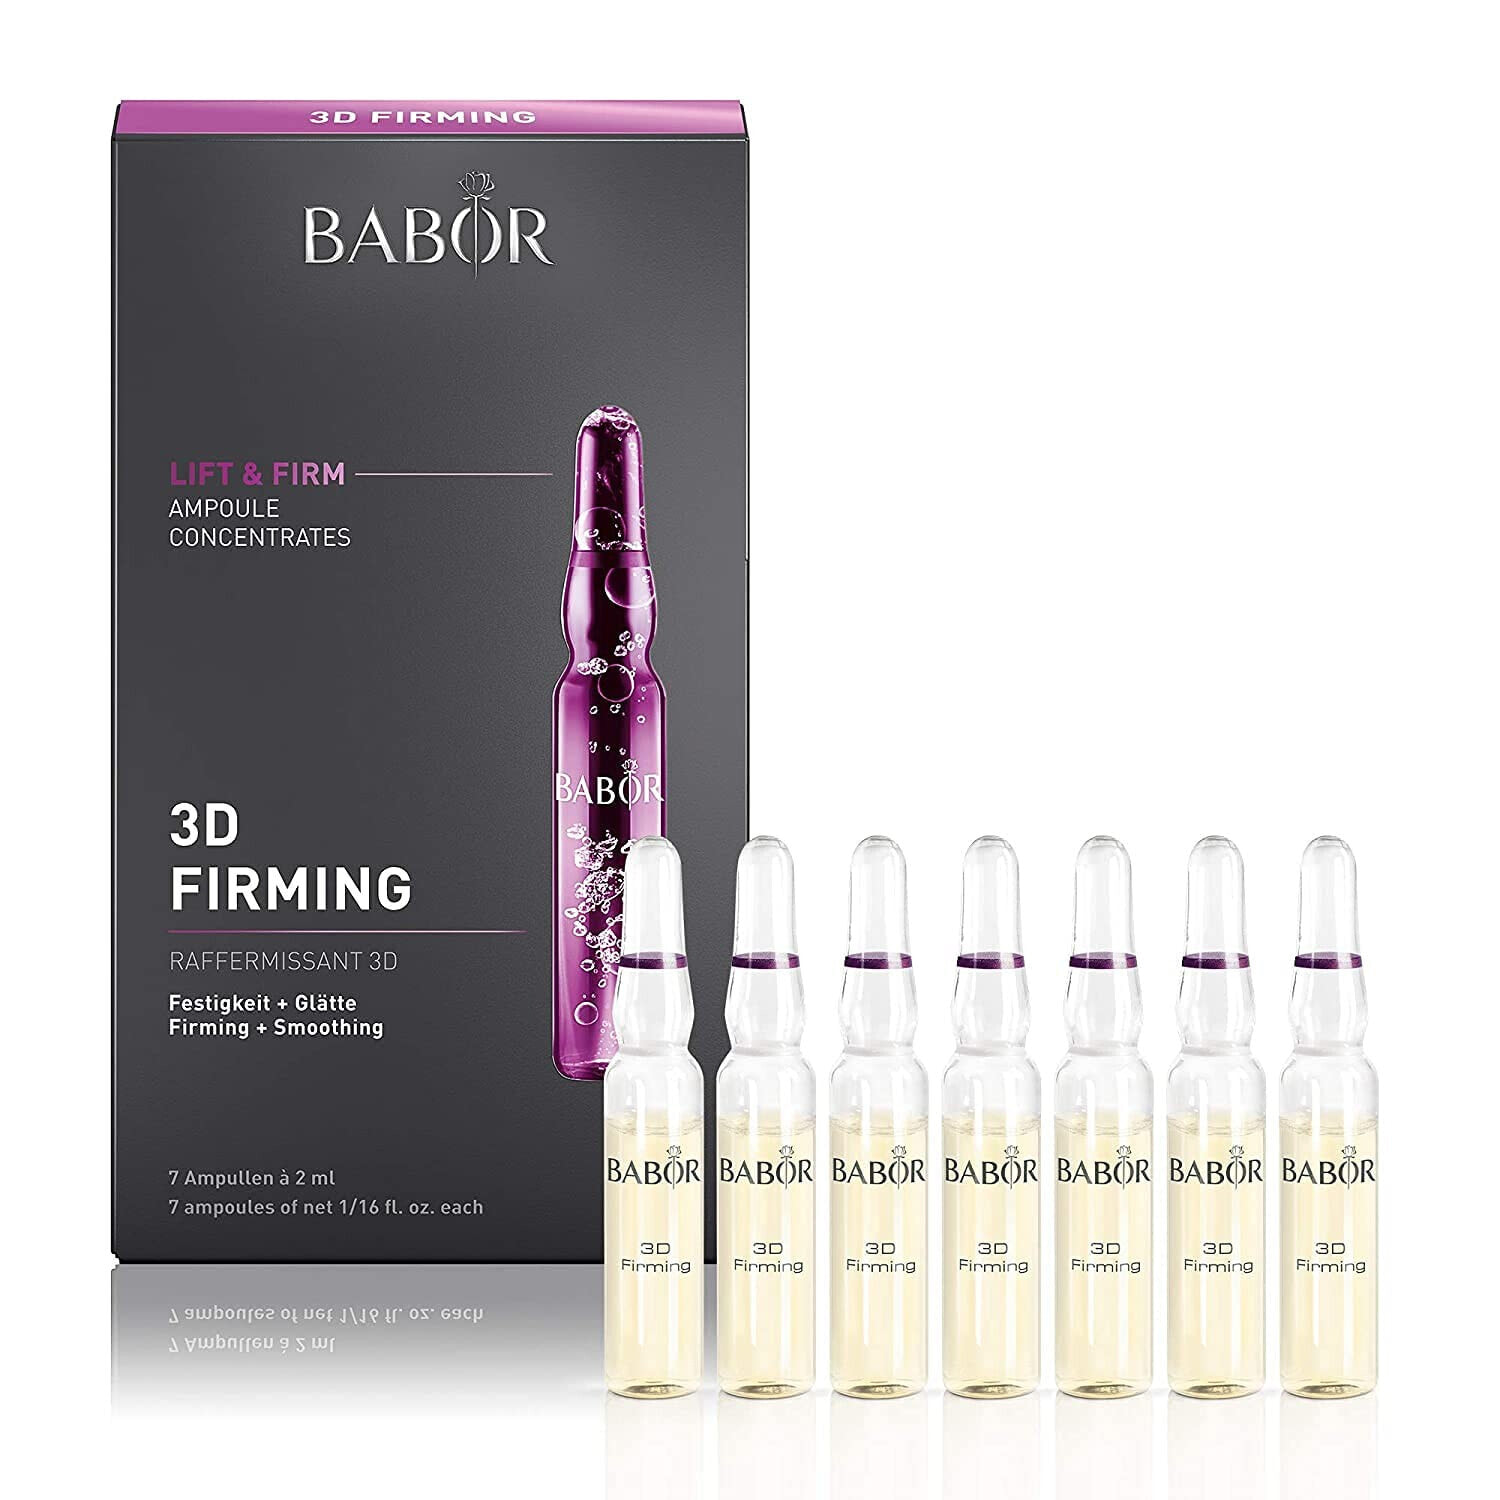 BABOR 3D Firming, Anti-Aging Serum Ampullen für das Gesicht, Mit Hyaluronsäure für mehr Festigkeit, Vegane Formel, Ampoule Concentrates, 7 x 2 ml